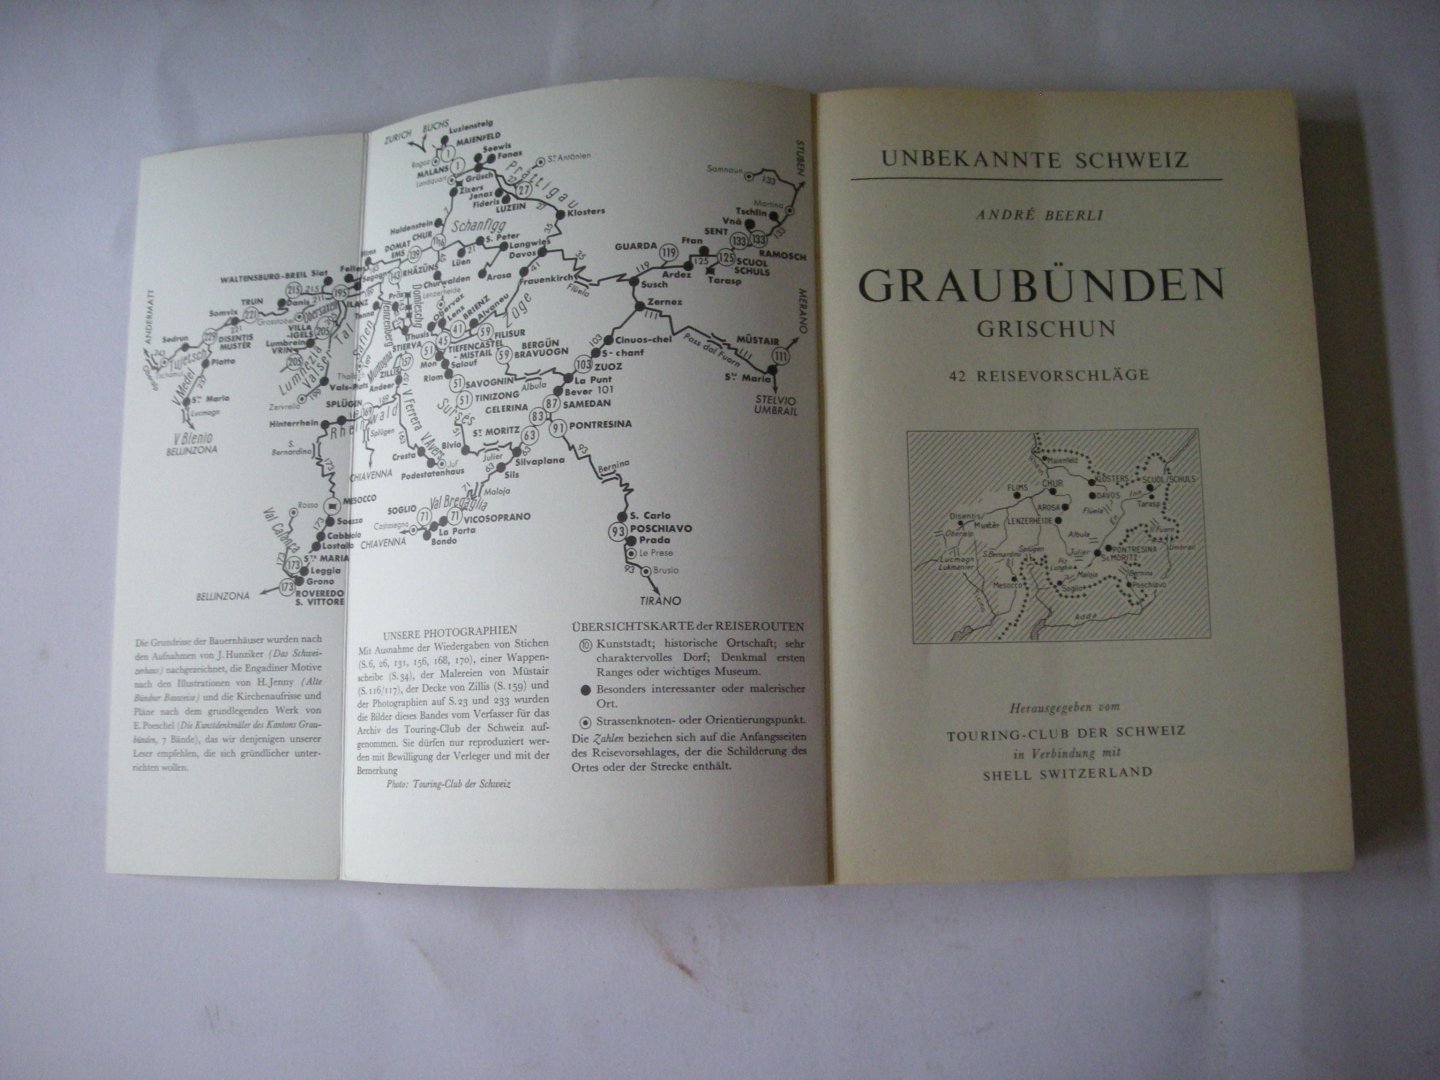 Beerli, Andre - Graubunden -  Grischun. 42 Reisevorschlage